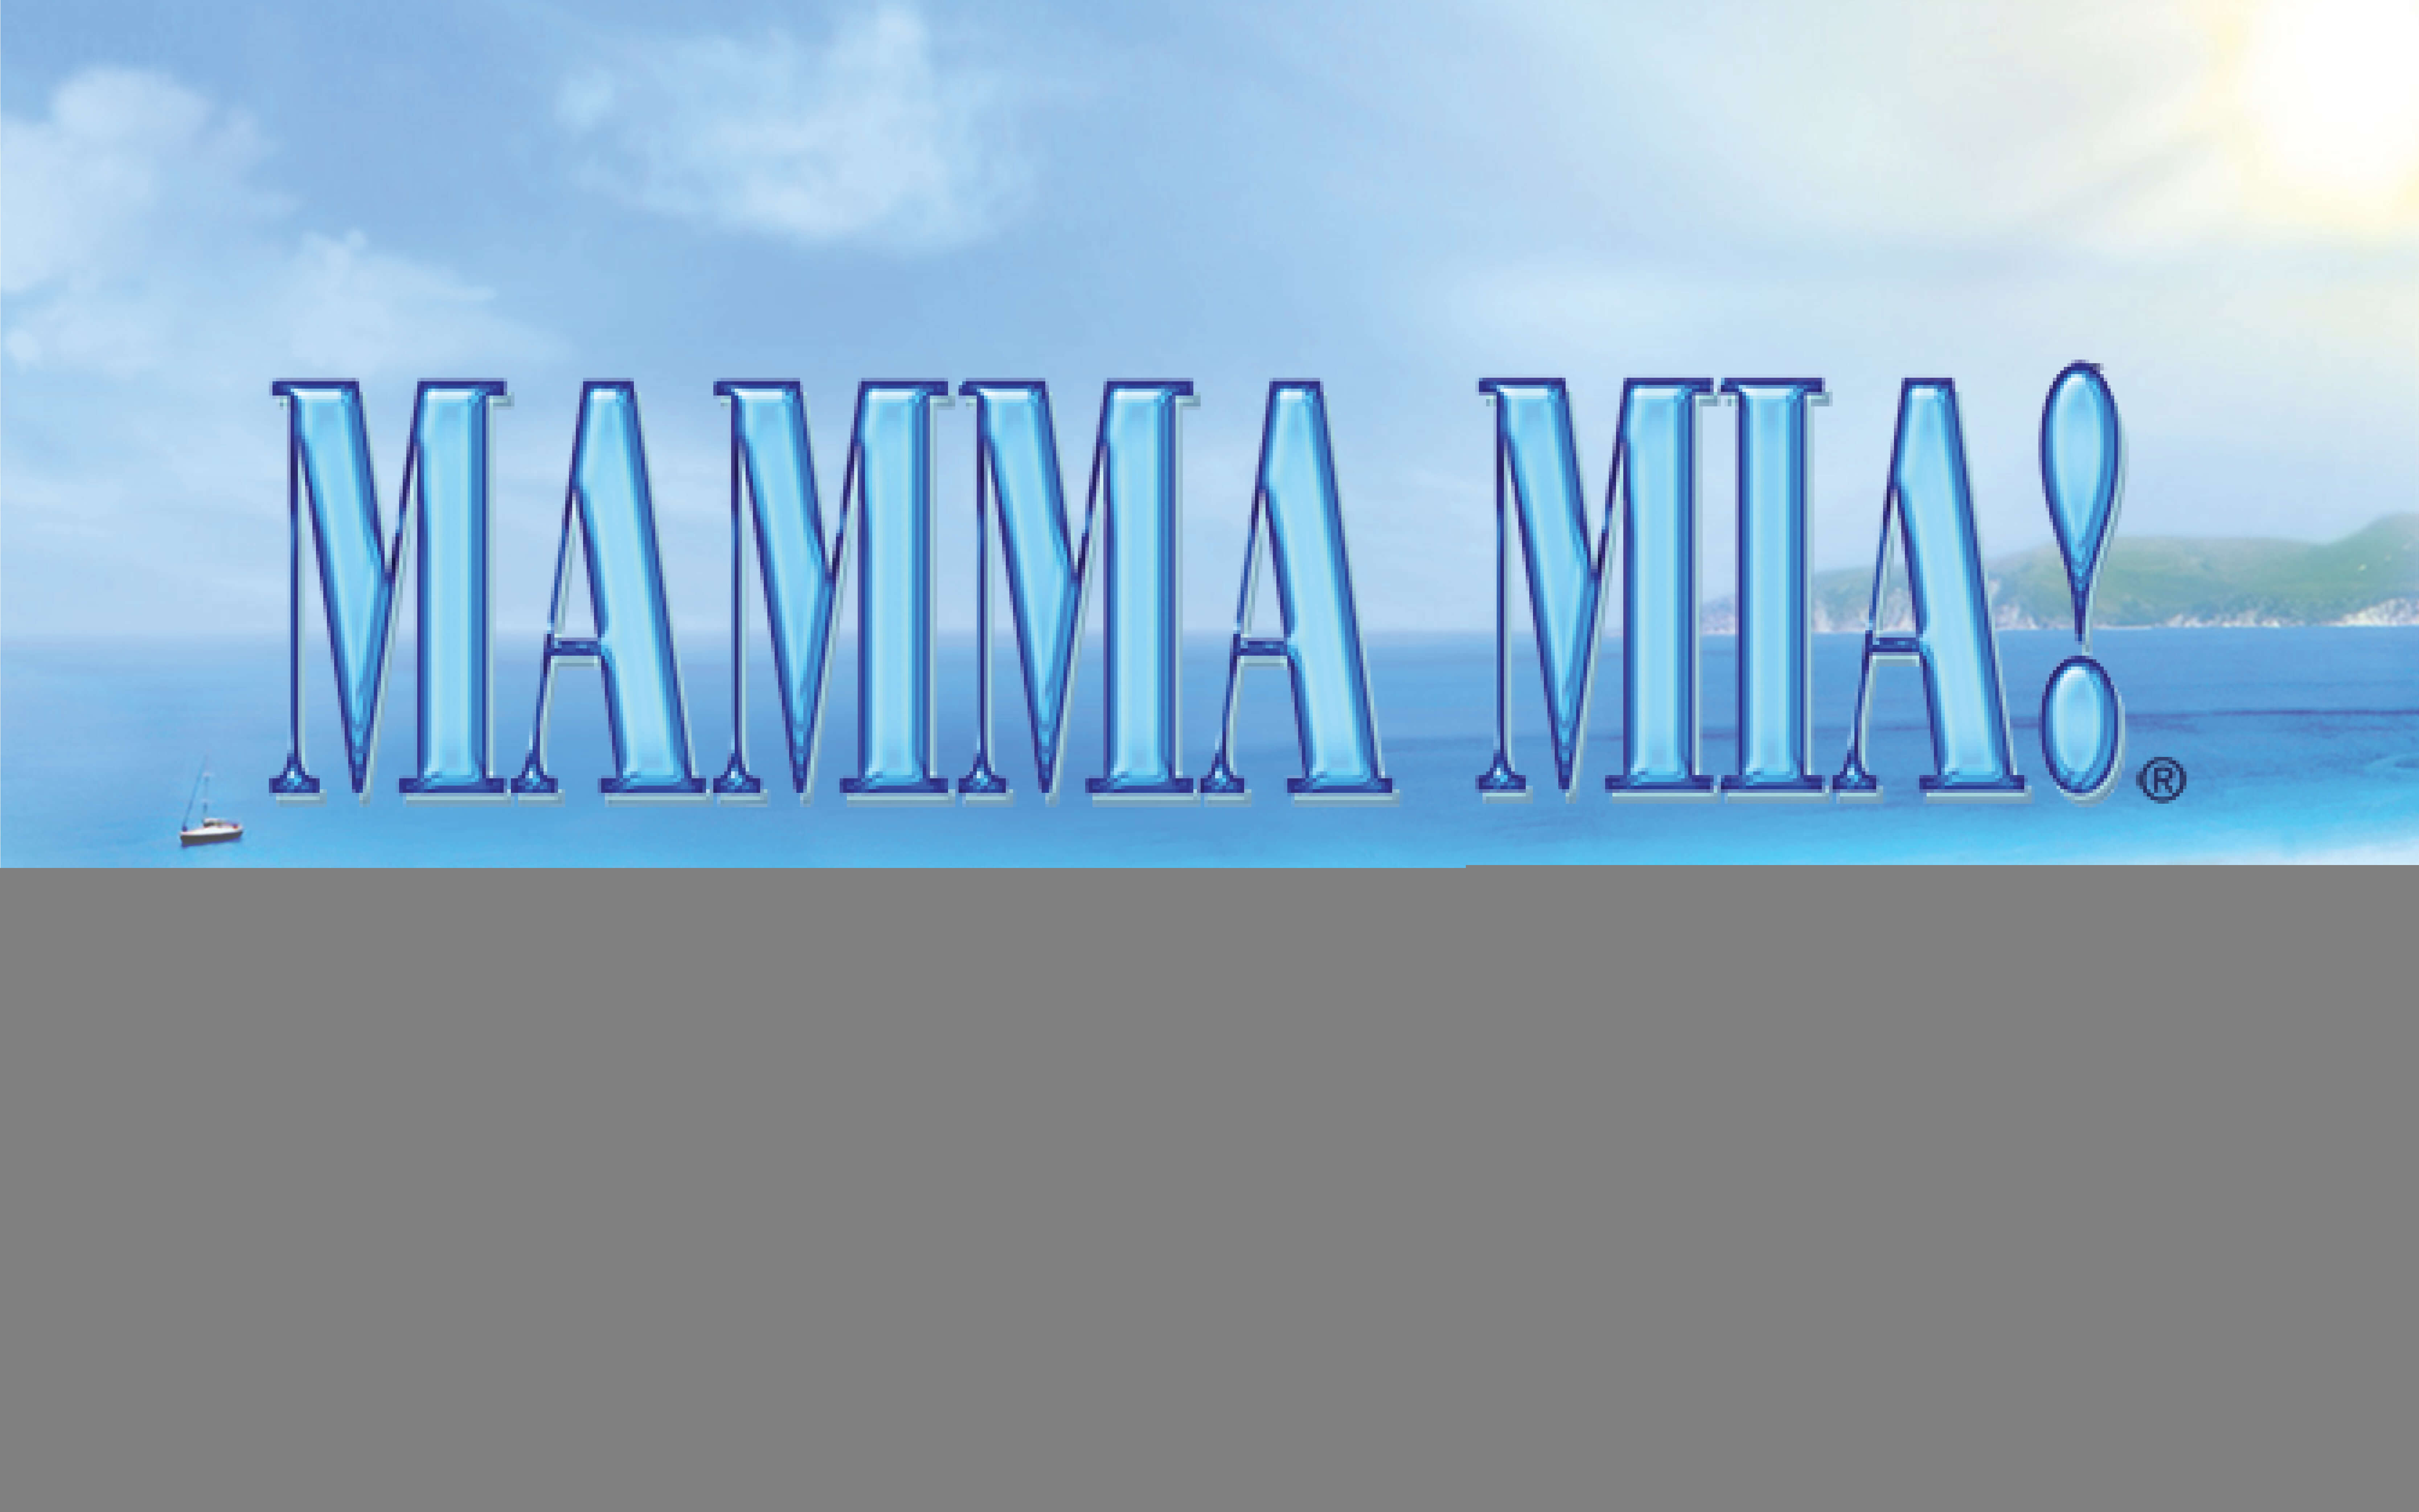 Image of Mamma Mia!